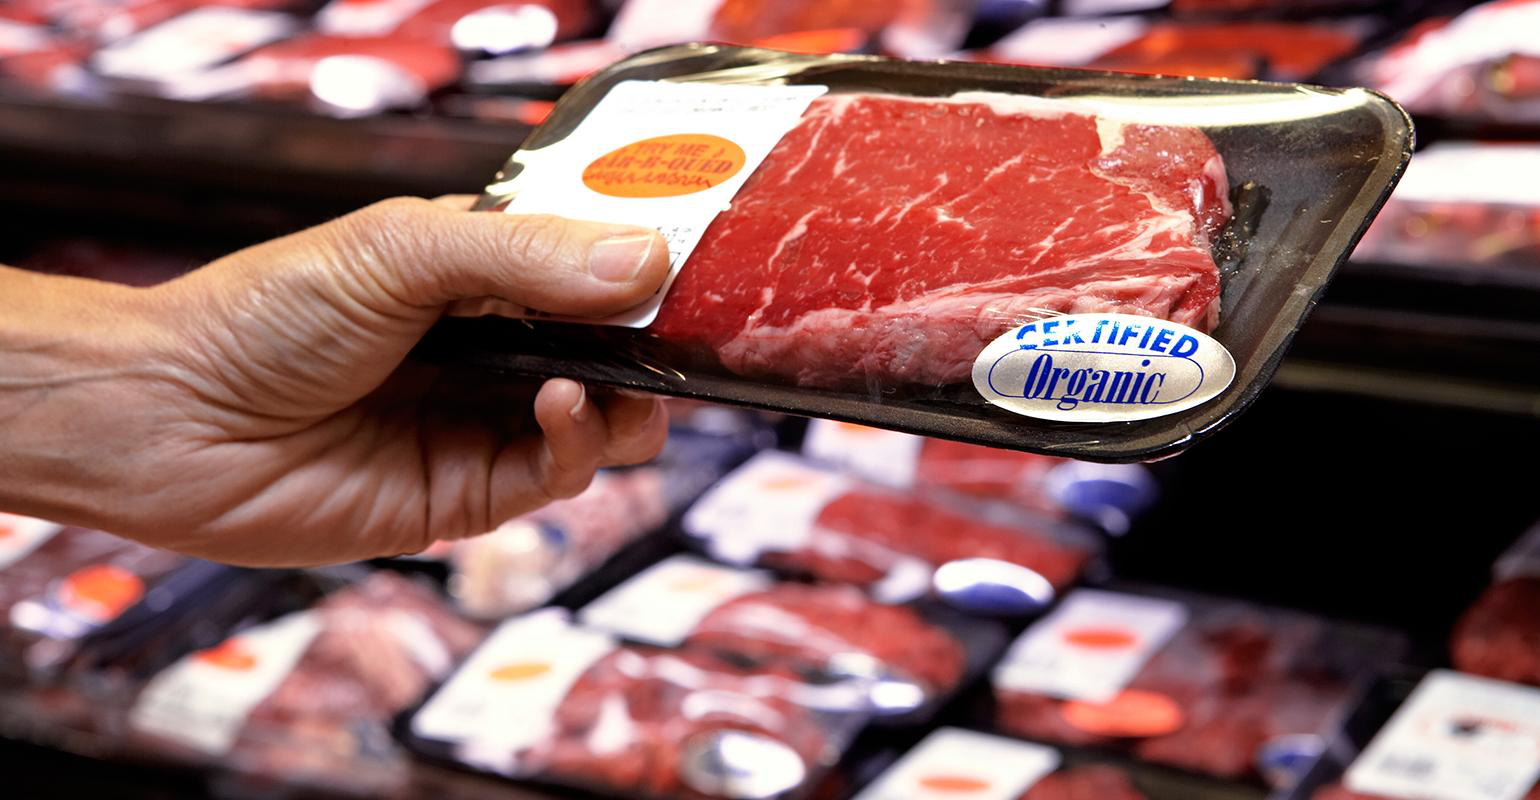 Xu hướng các chuỗi siêu thị tự sản xuất thịt, sữa để bán